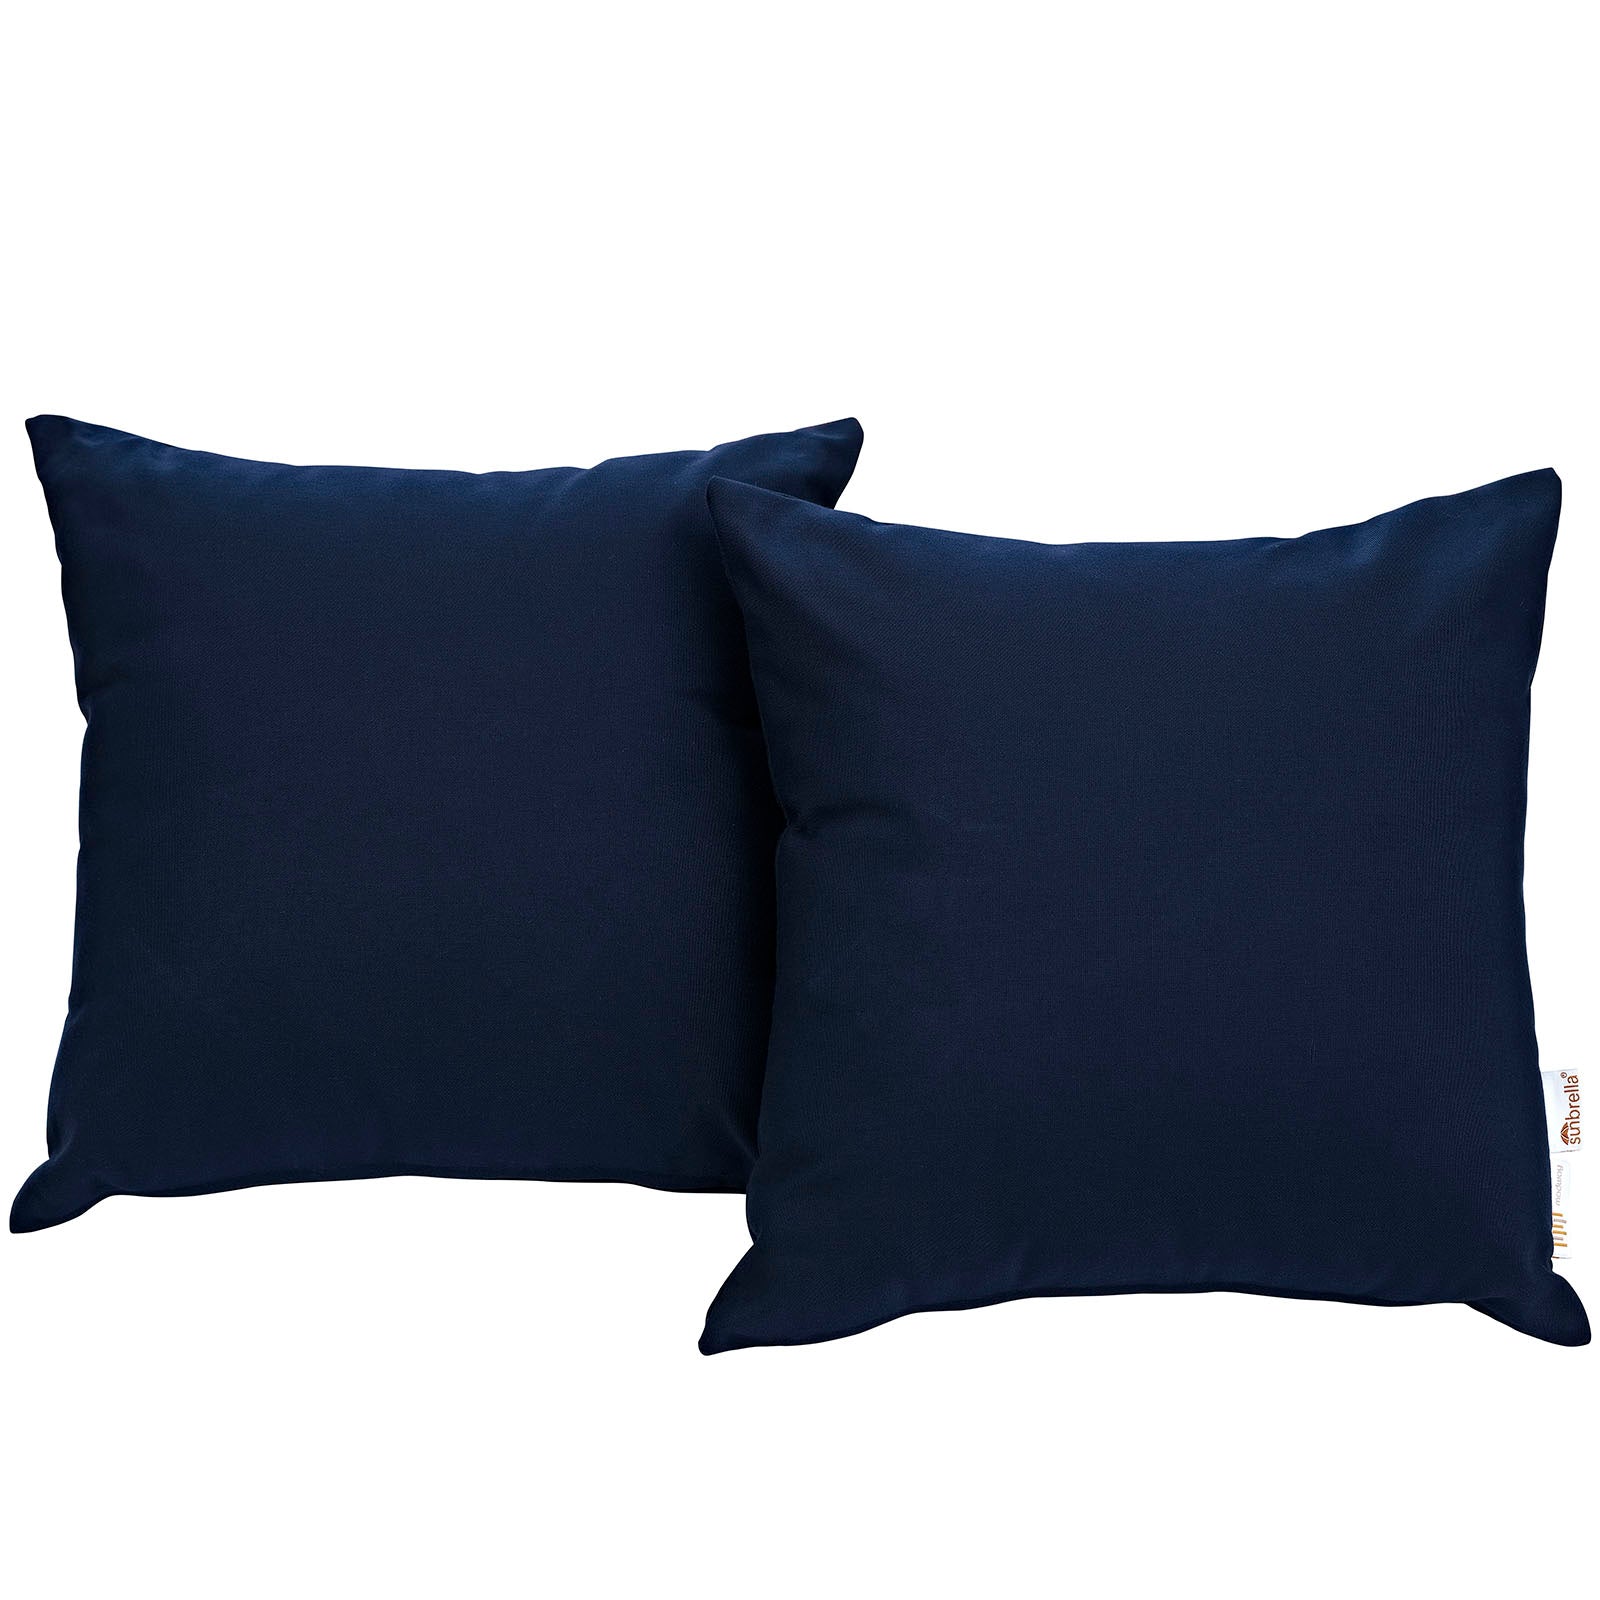 Modway Outdoor Pillows & Cushions - Summon 2 Piece Outdoor Patio Sunbrella Pillow Set Navy